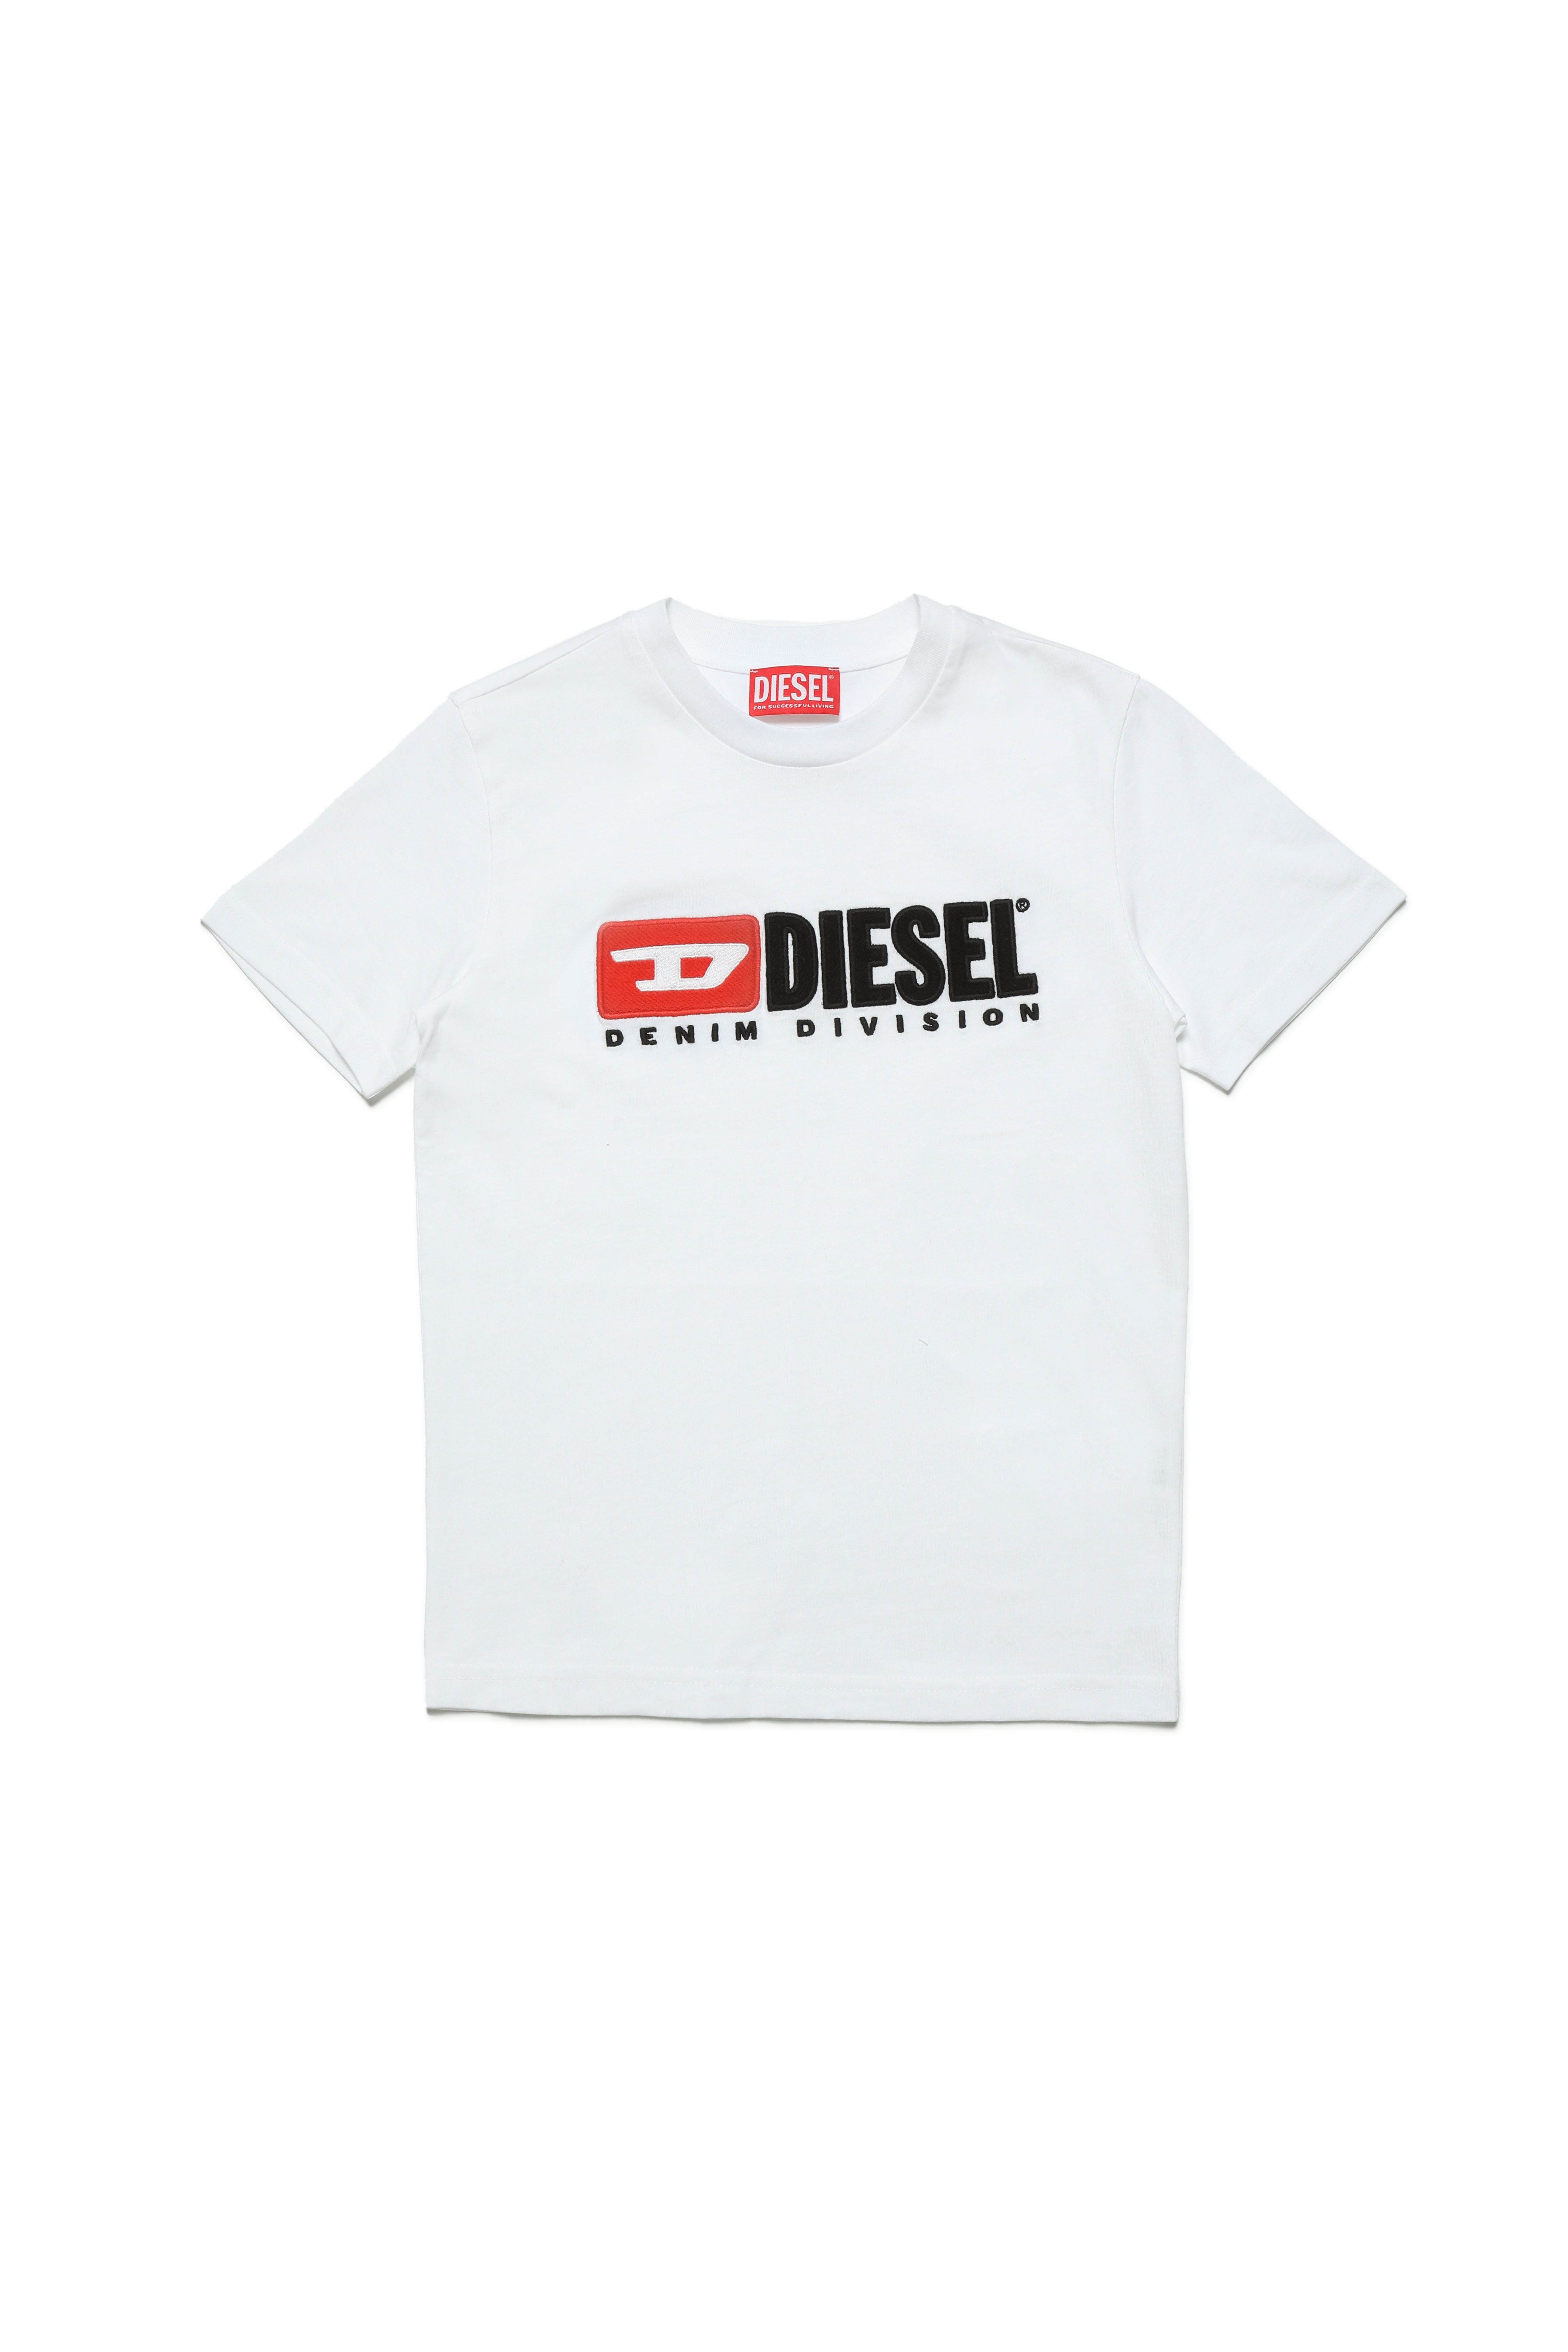 Diesel - TDIEGODIVE, Weiß - Image 1